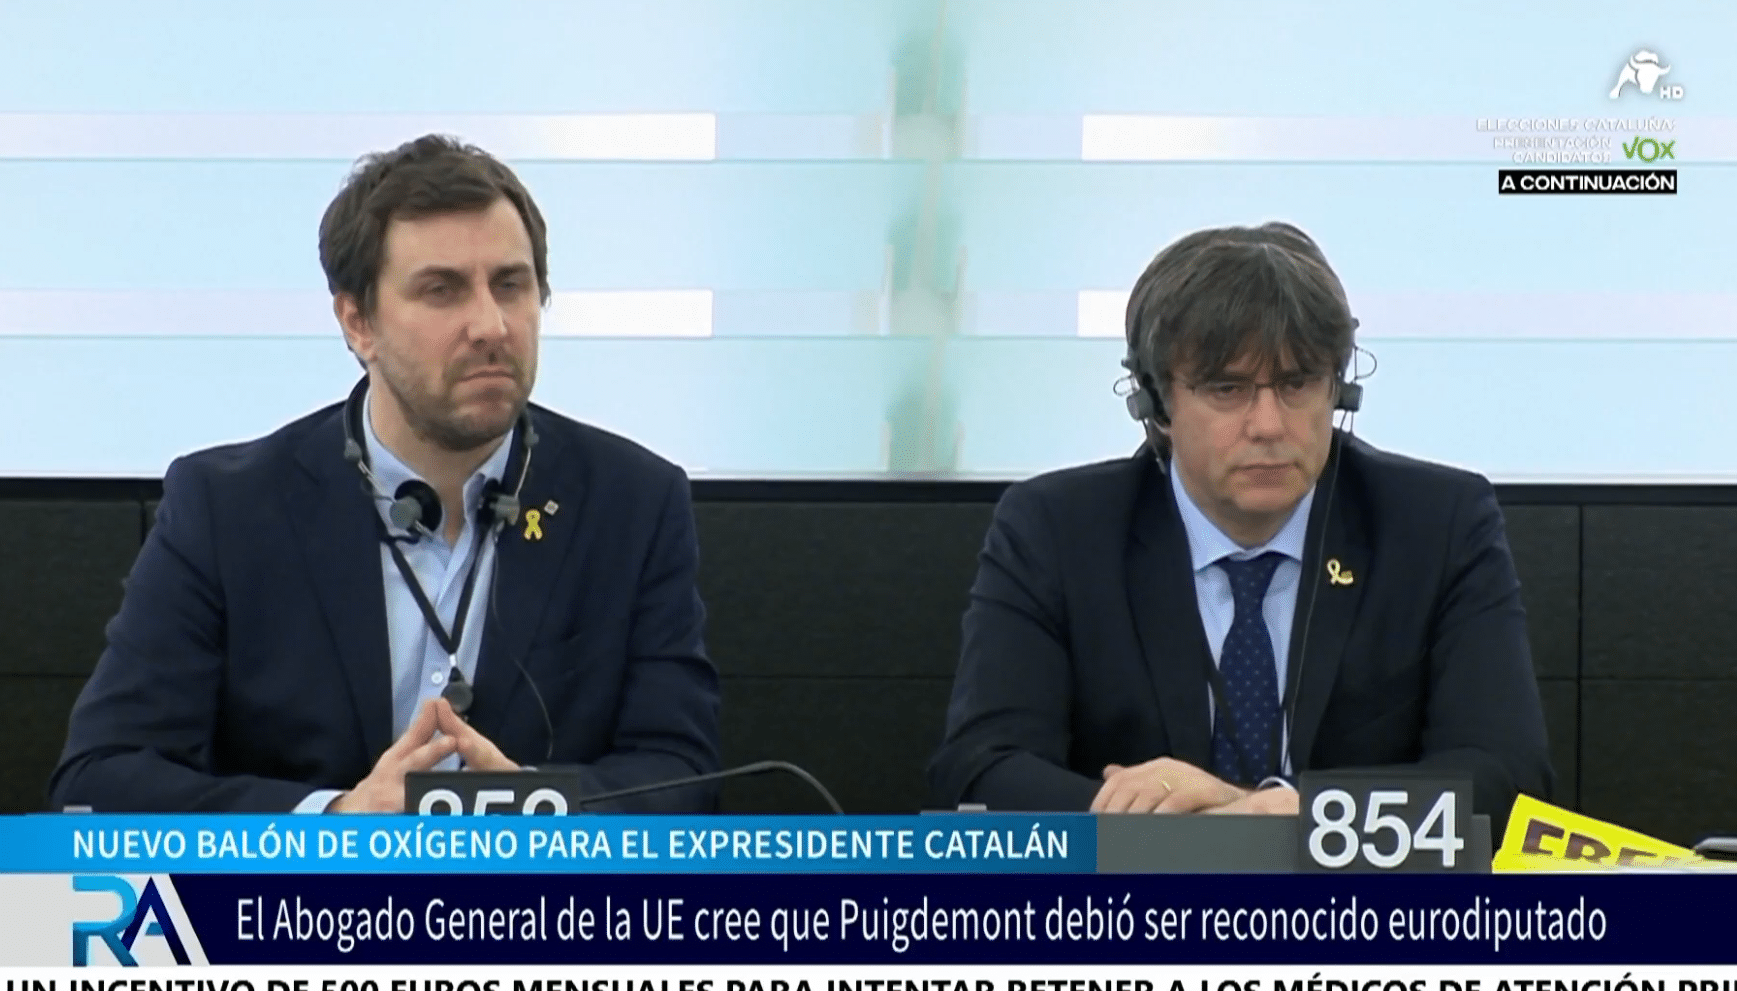 Nuevo balón de oxígeno para Puigdemont: El Abogado General de la UE cree que debería haber sido reconocido como eurodiputado en 2019